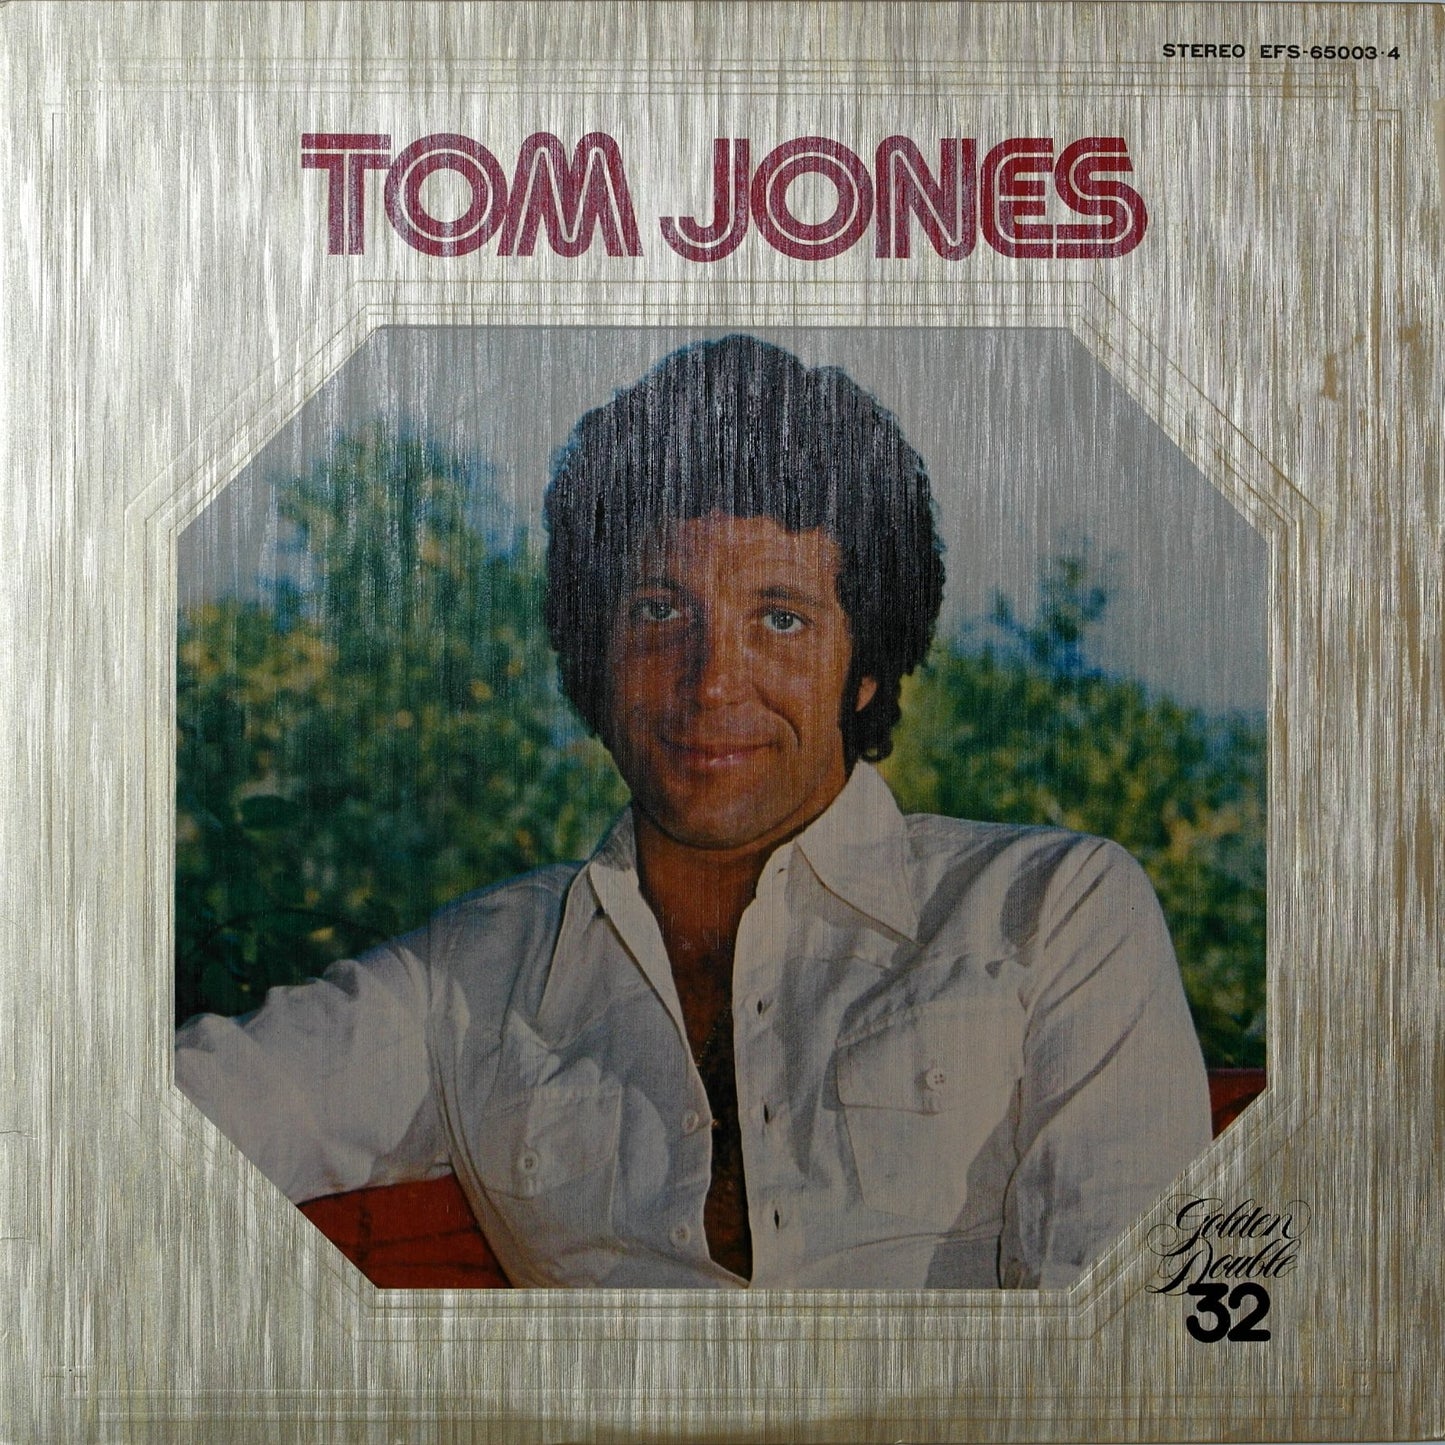 TOM JONES - Golden Double 32